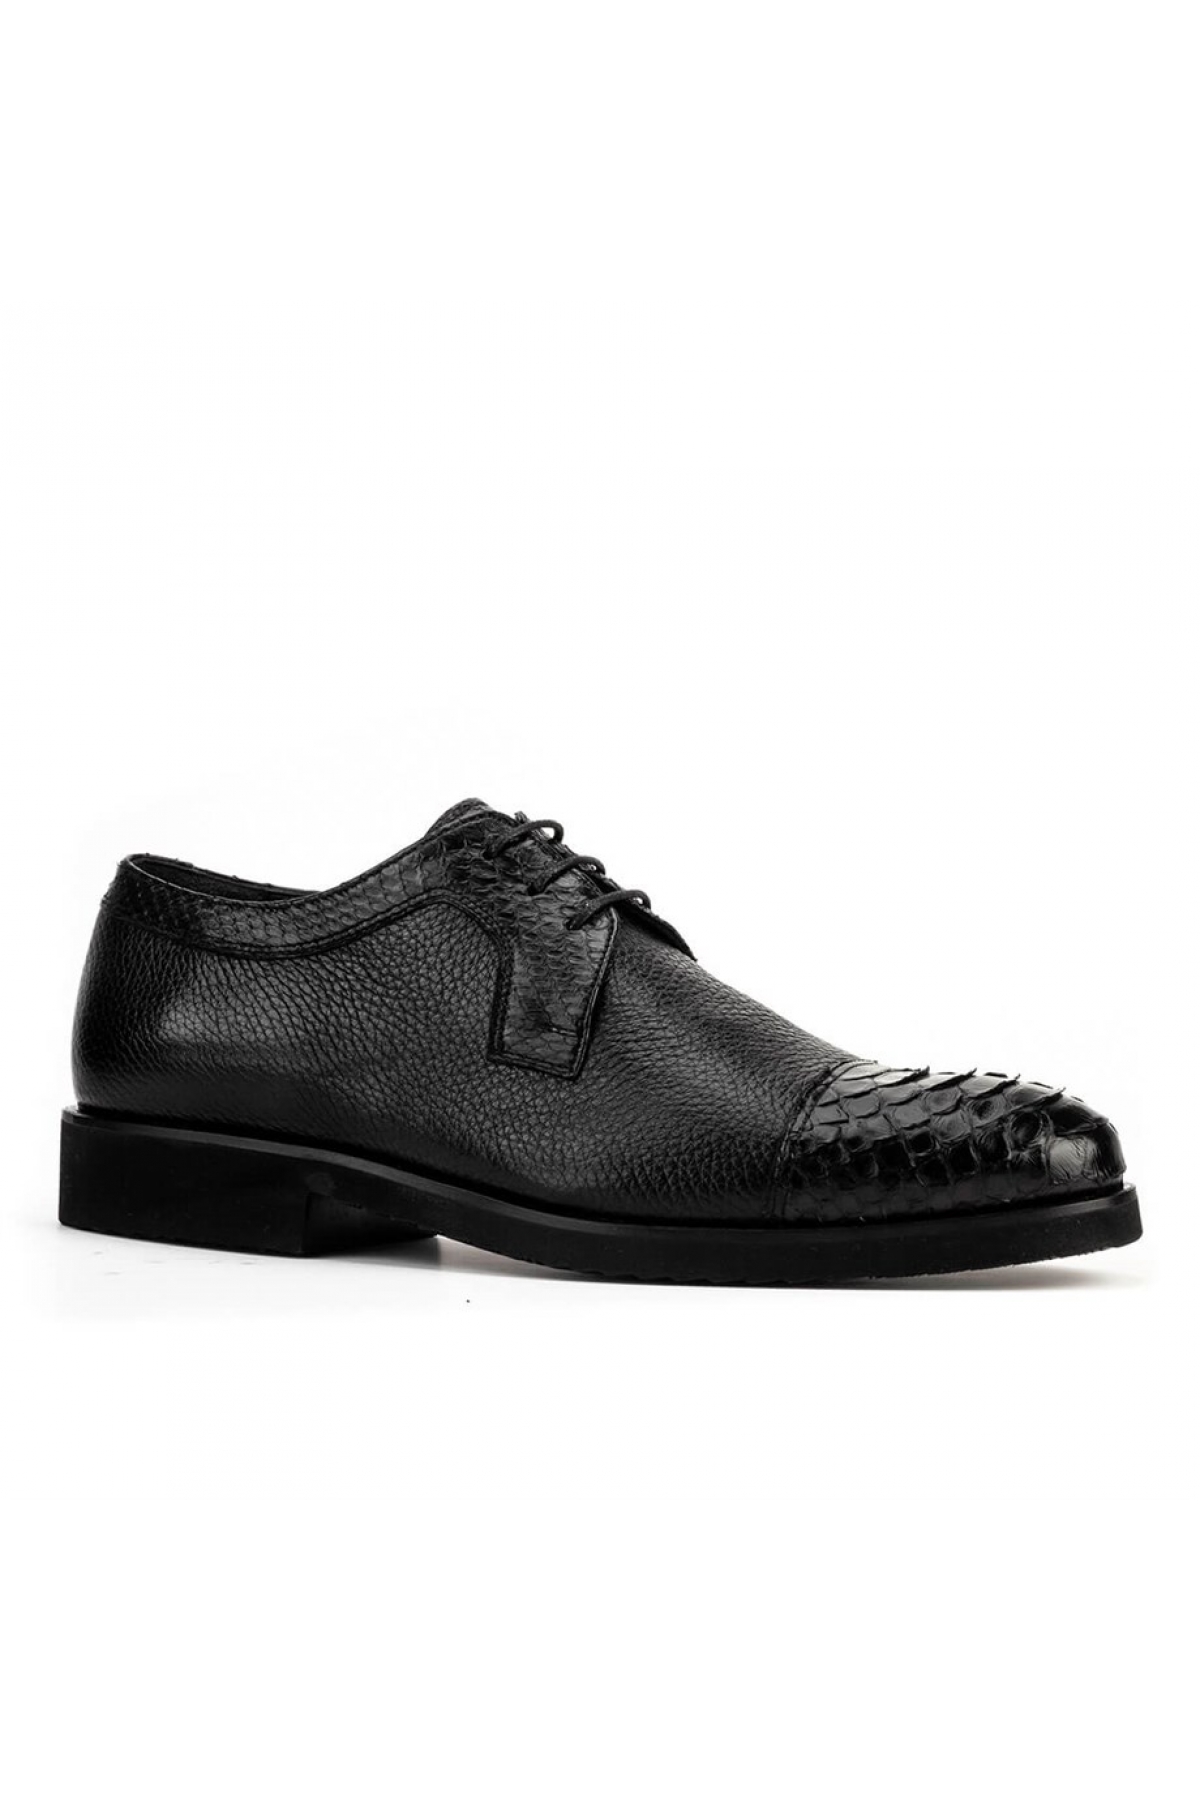 Flo Hakiki Deri Siyah Bağcıklı Erkek Klasik Ayakkabı. 1